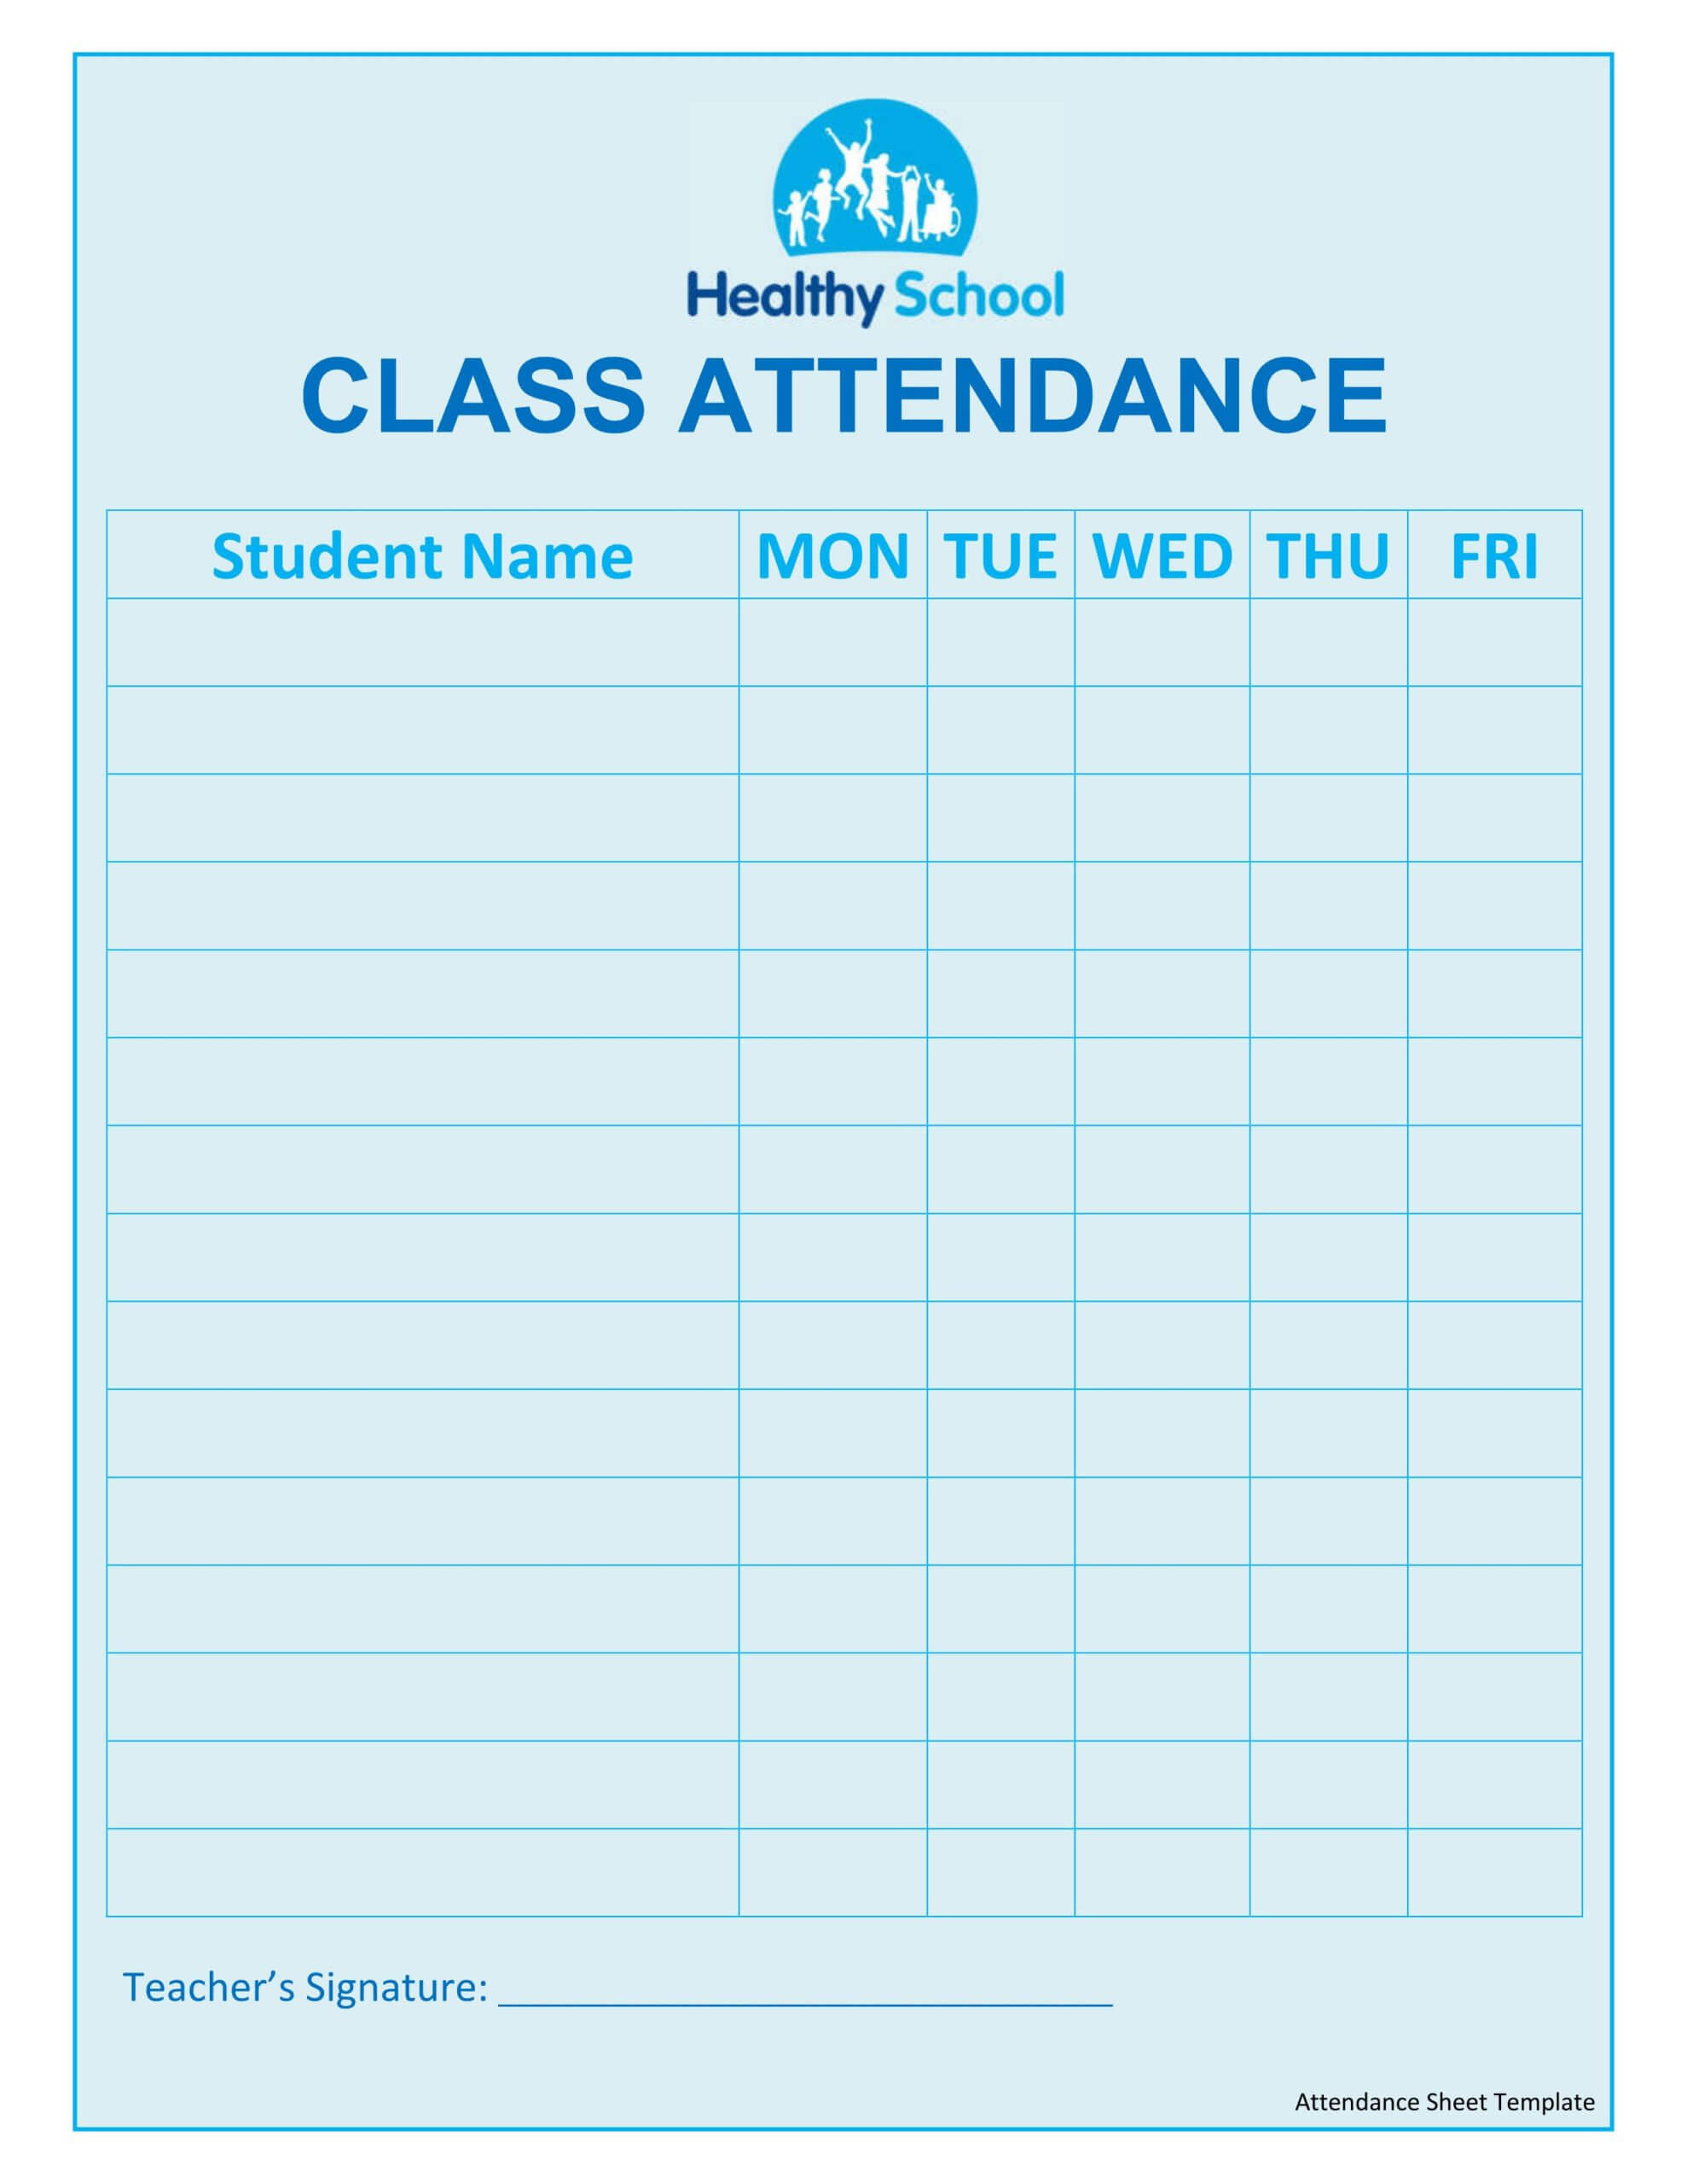 Attendance Sheet Template | Johannes Kr Throughout Student Information Card Template